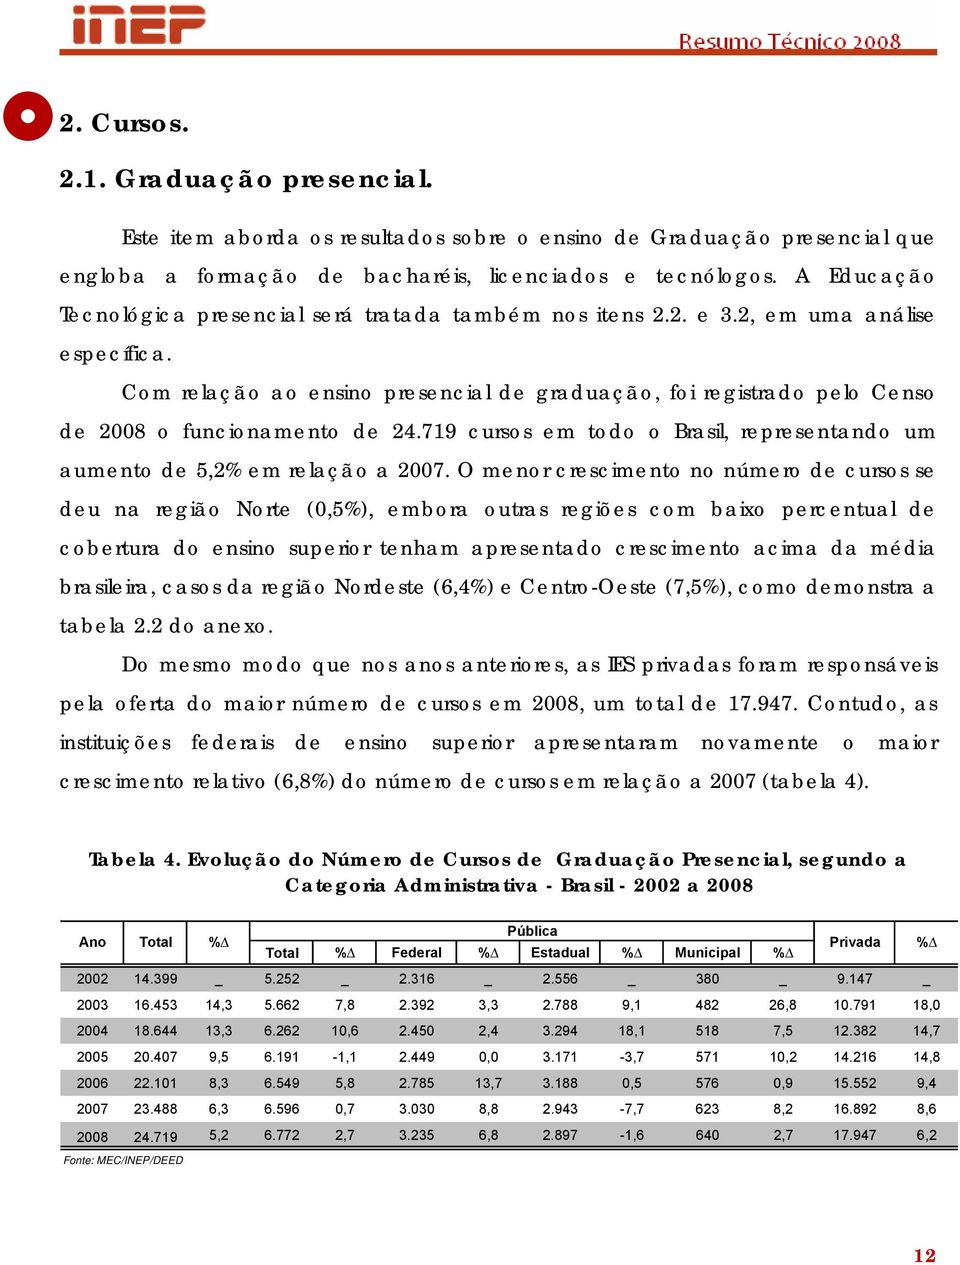 Com relação ao ensino presencial de graduação, foi registrado pelo Censo de 2008 o funcionamento de 24.719 cursos em todo o Brasil, representando um aumento de 5,2% em relação a 2007.